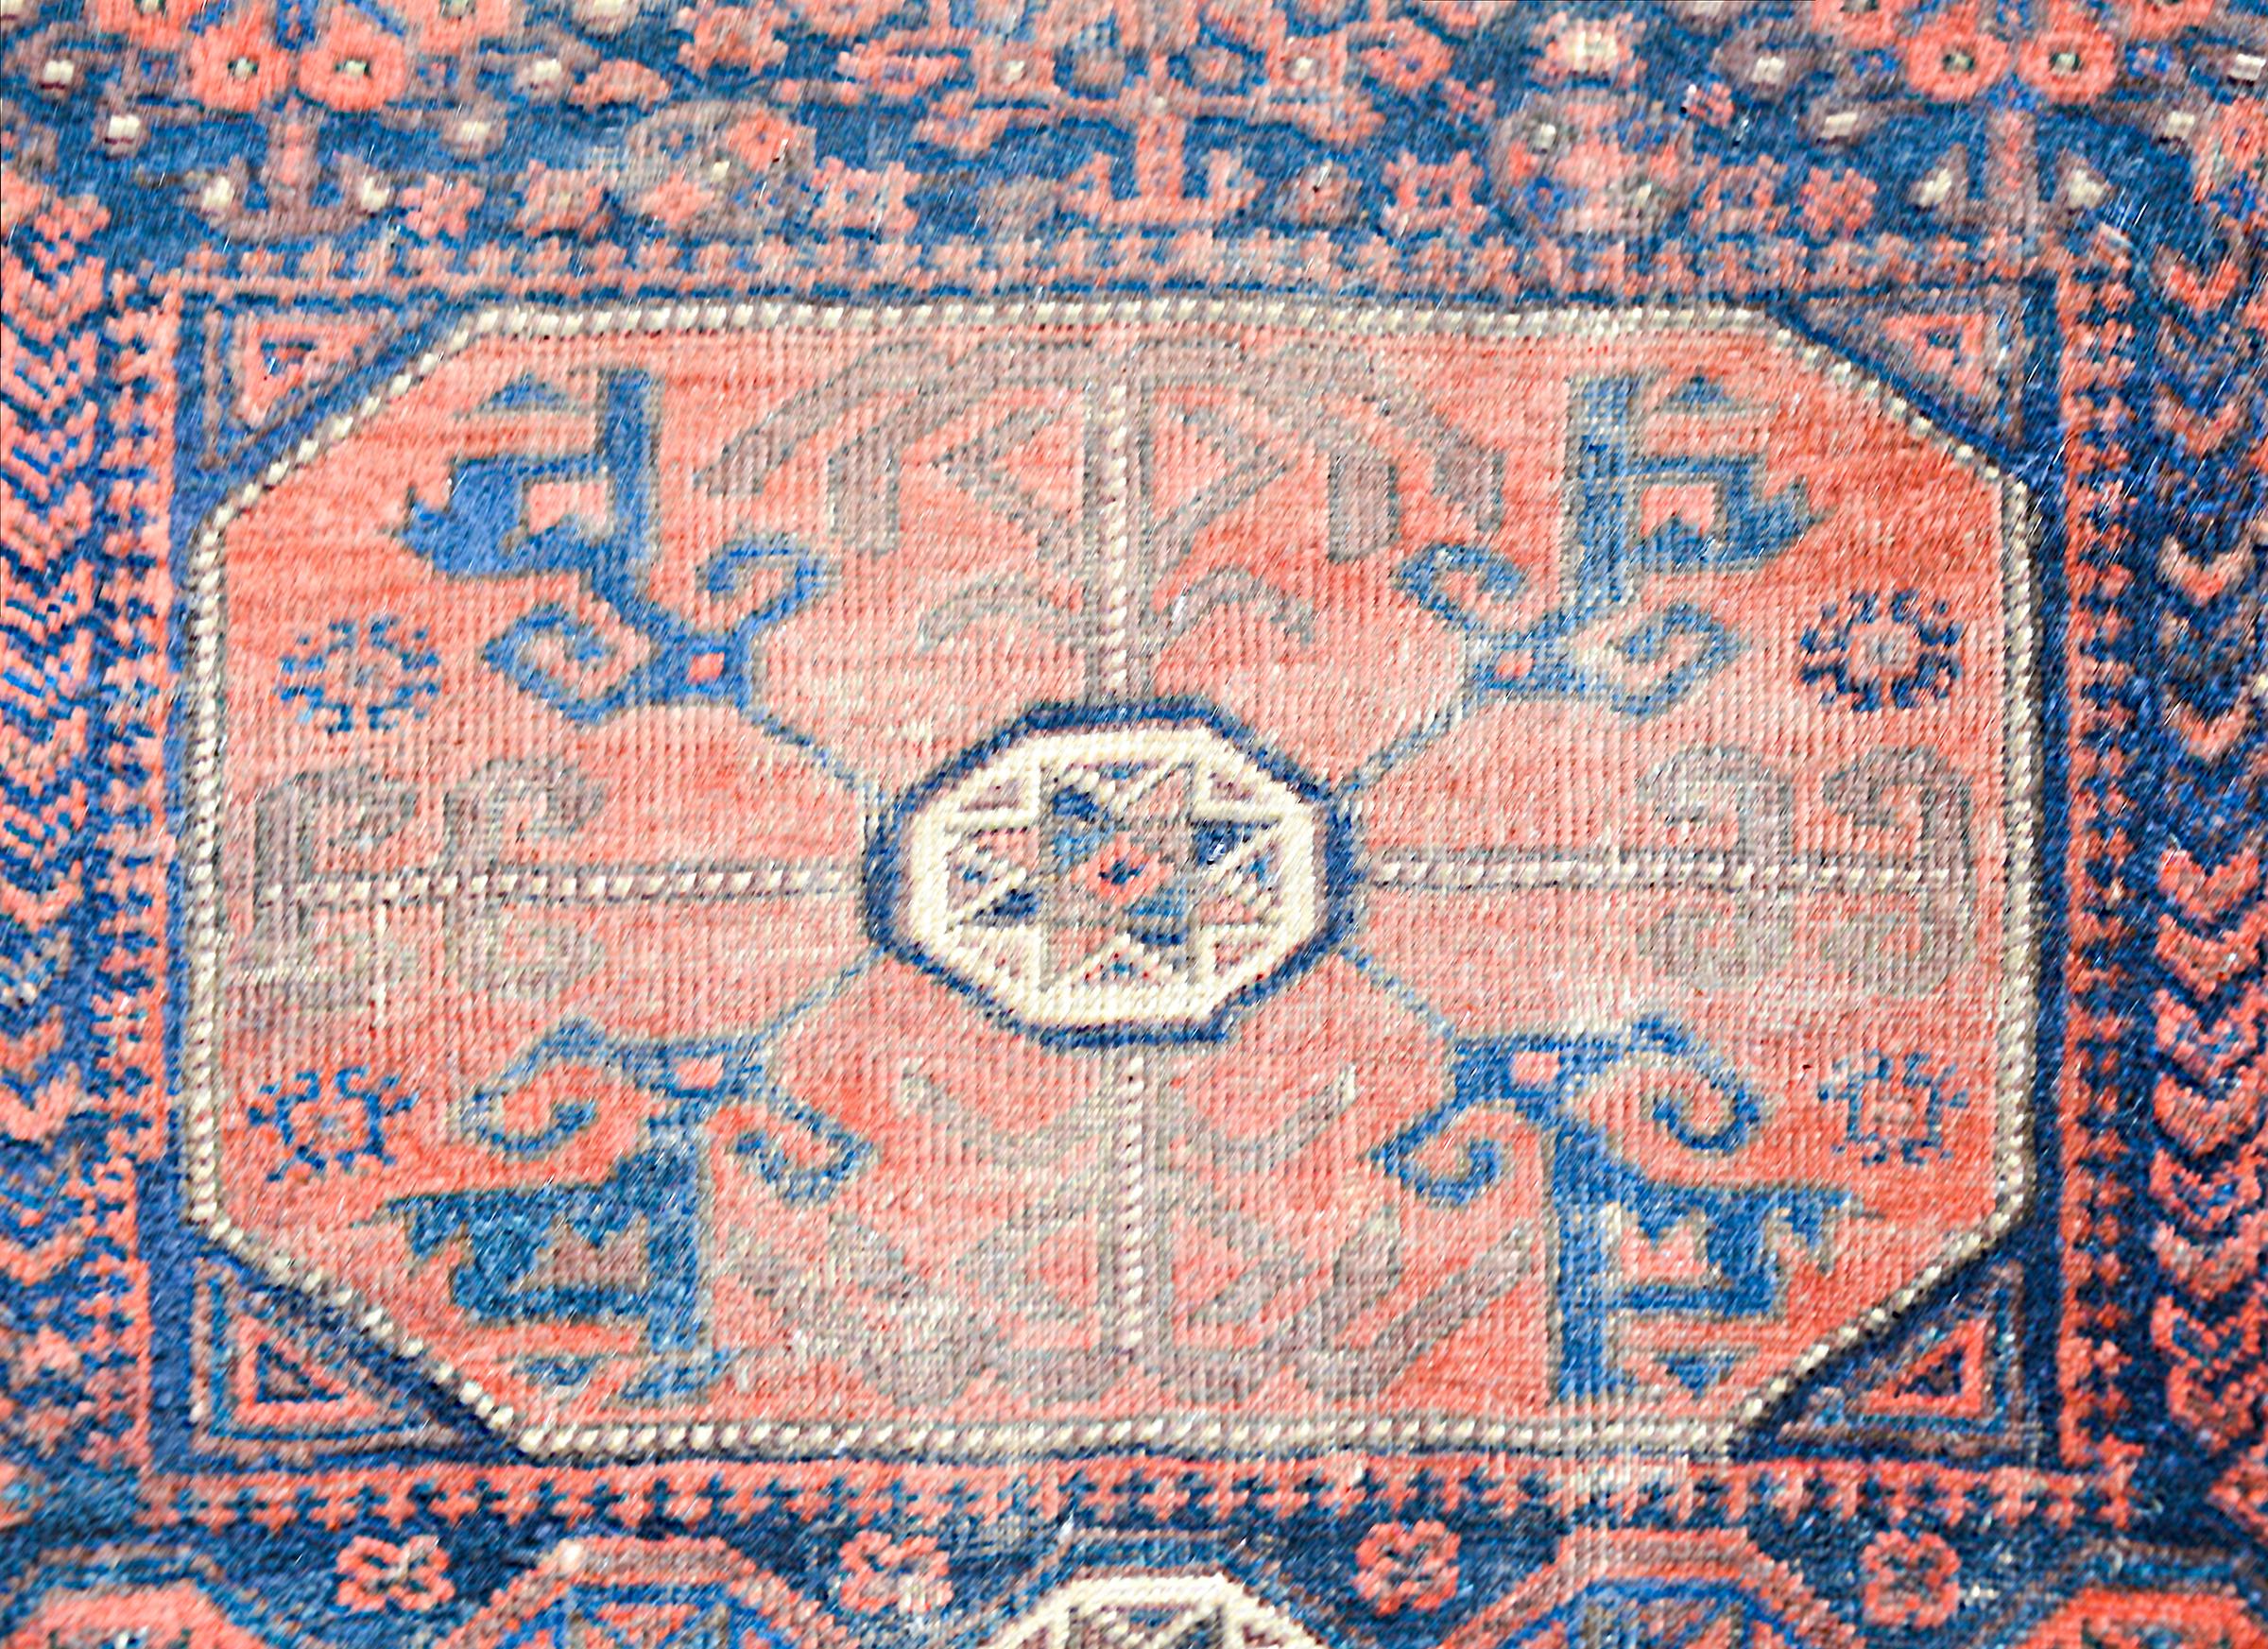 Magnifique tapis persan Baluch du début du XXe siècle, présentant un fantastique motif tribal contenant de multiples fleurs stylisées tissées en cramoisi, indigo, brun et blanc, et entouré d'une bordure à motifs de fleurs et de feuilles